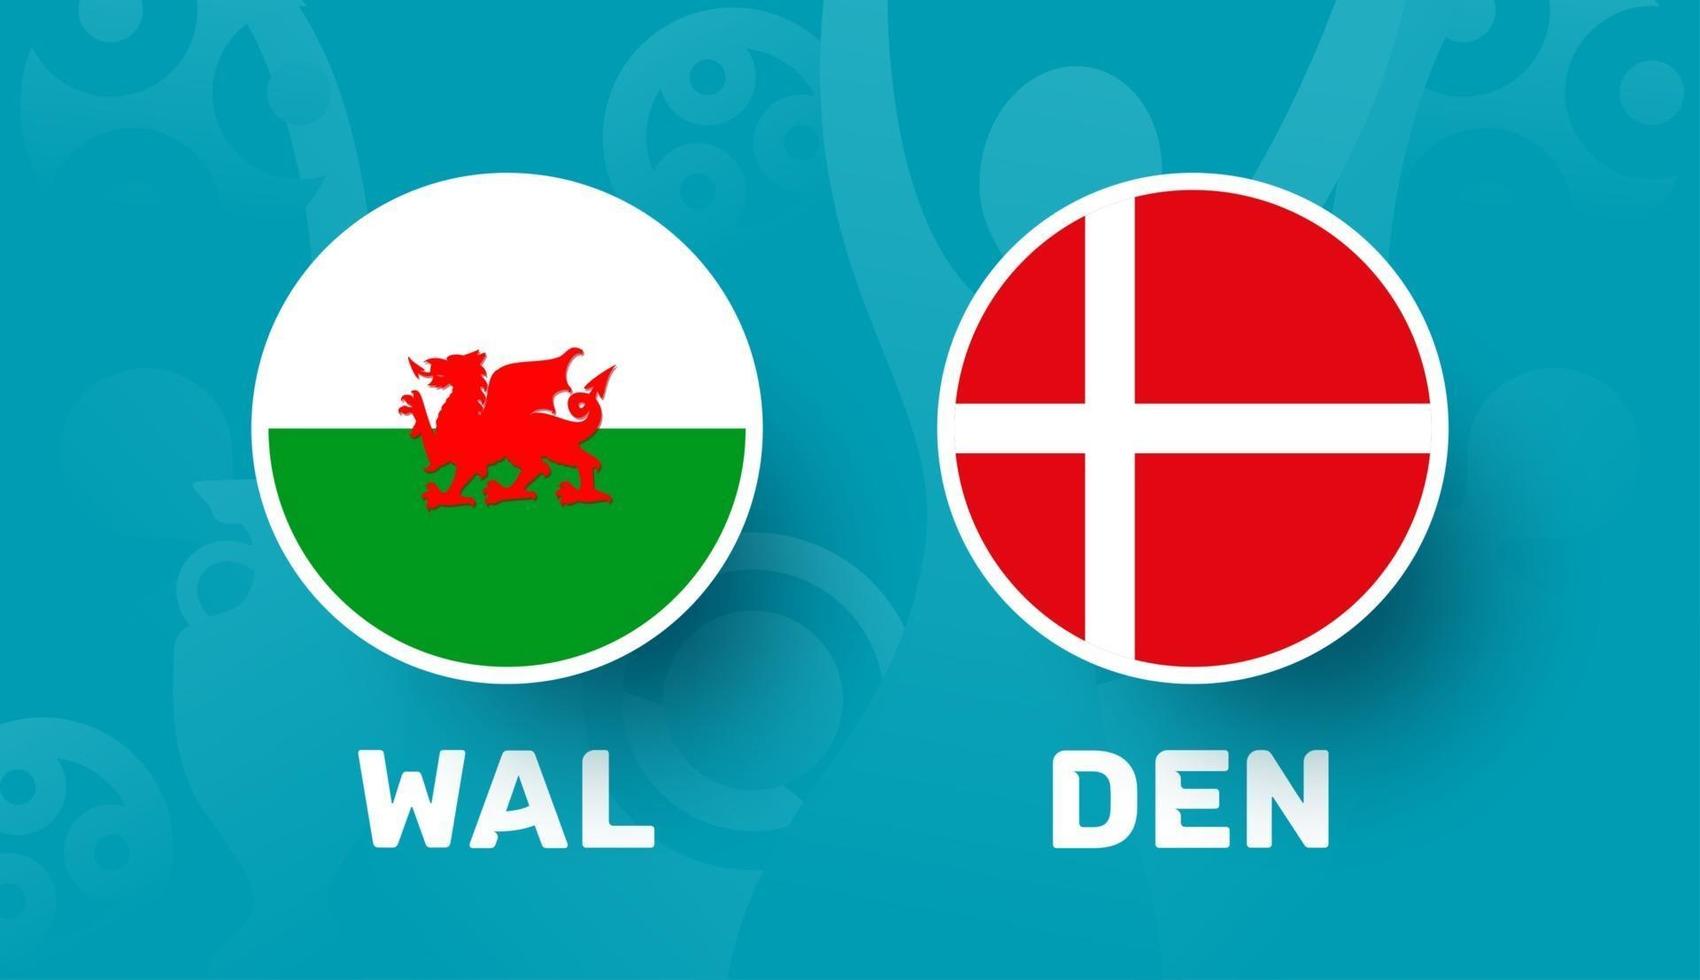 Galles vs Danimarca round di 16 partite, illustrazione vettoriale del campionato europeo di calcio 2020. partita del campionato di calcio 2020 contro lo sfondo sportivo introduttivo delle squadre teams